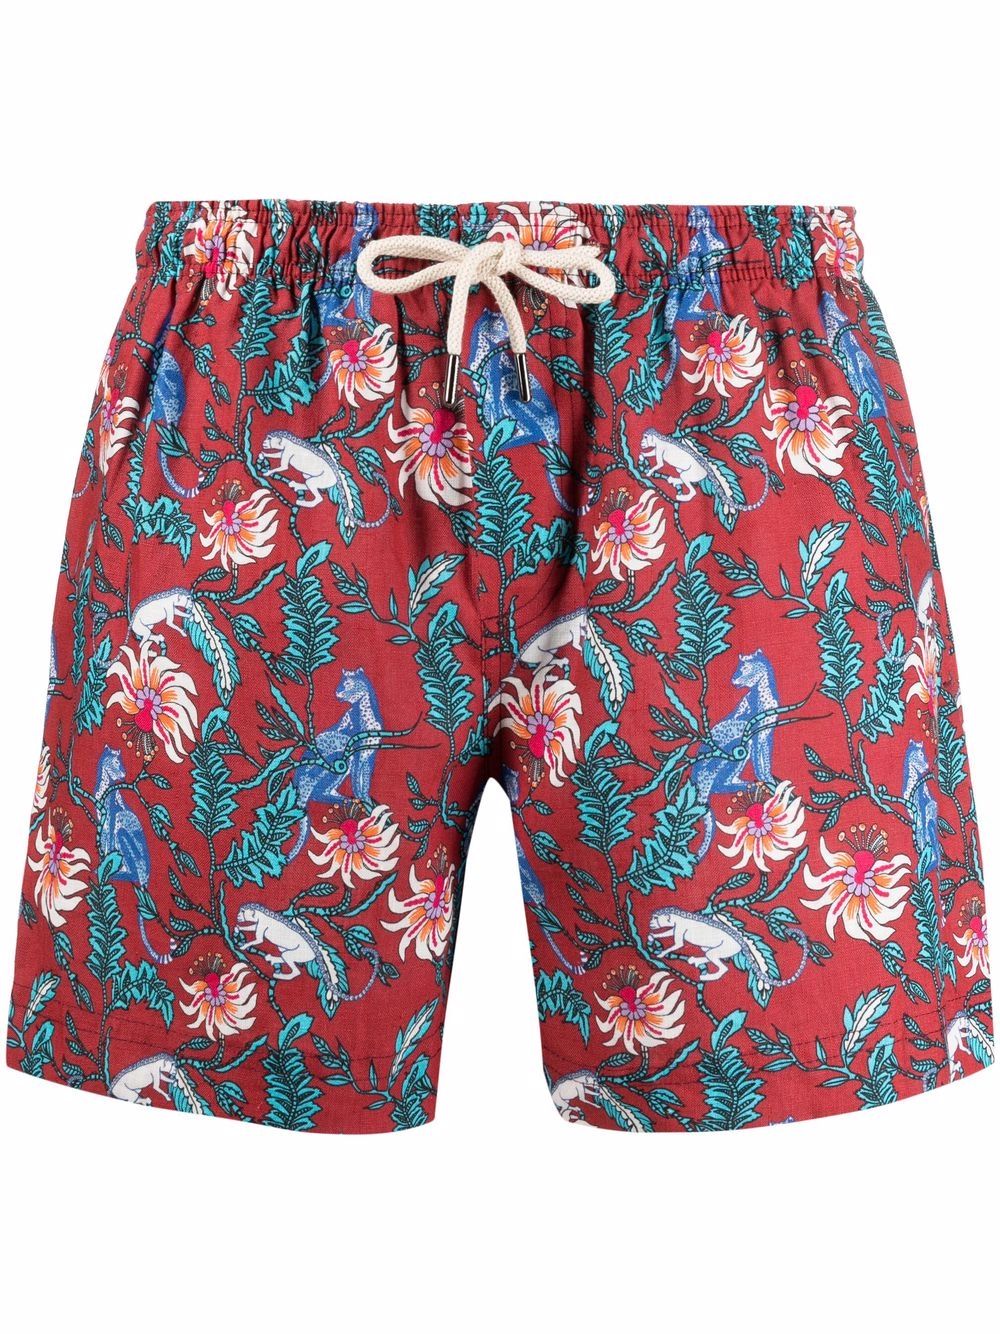 PENINSULA SWIMWEAR malindi floral-print swimming shorts - Red von PENINSULA SWIMWEAR